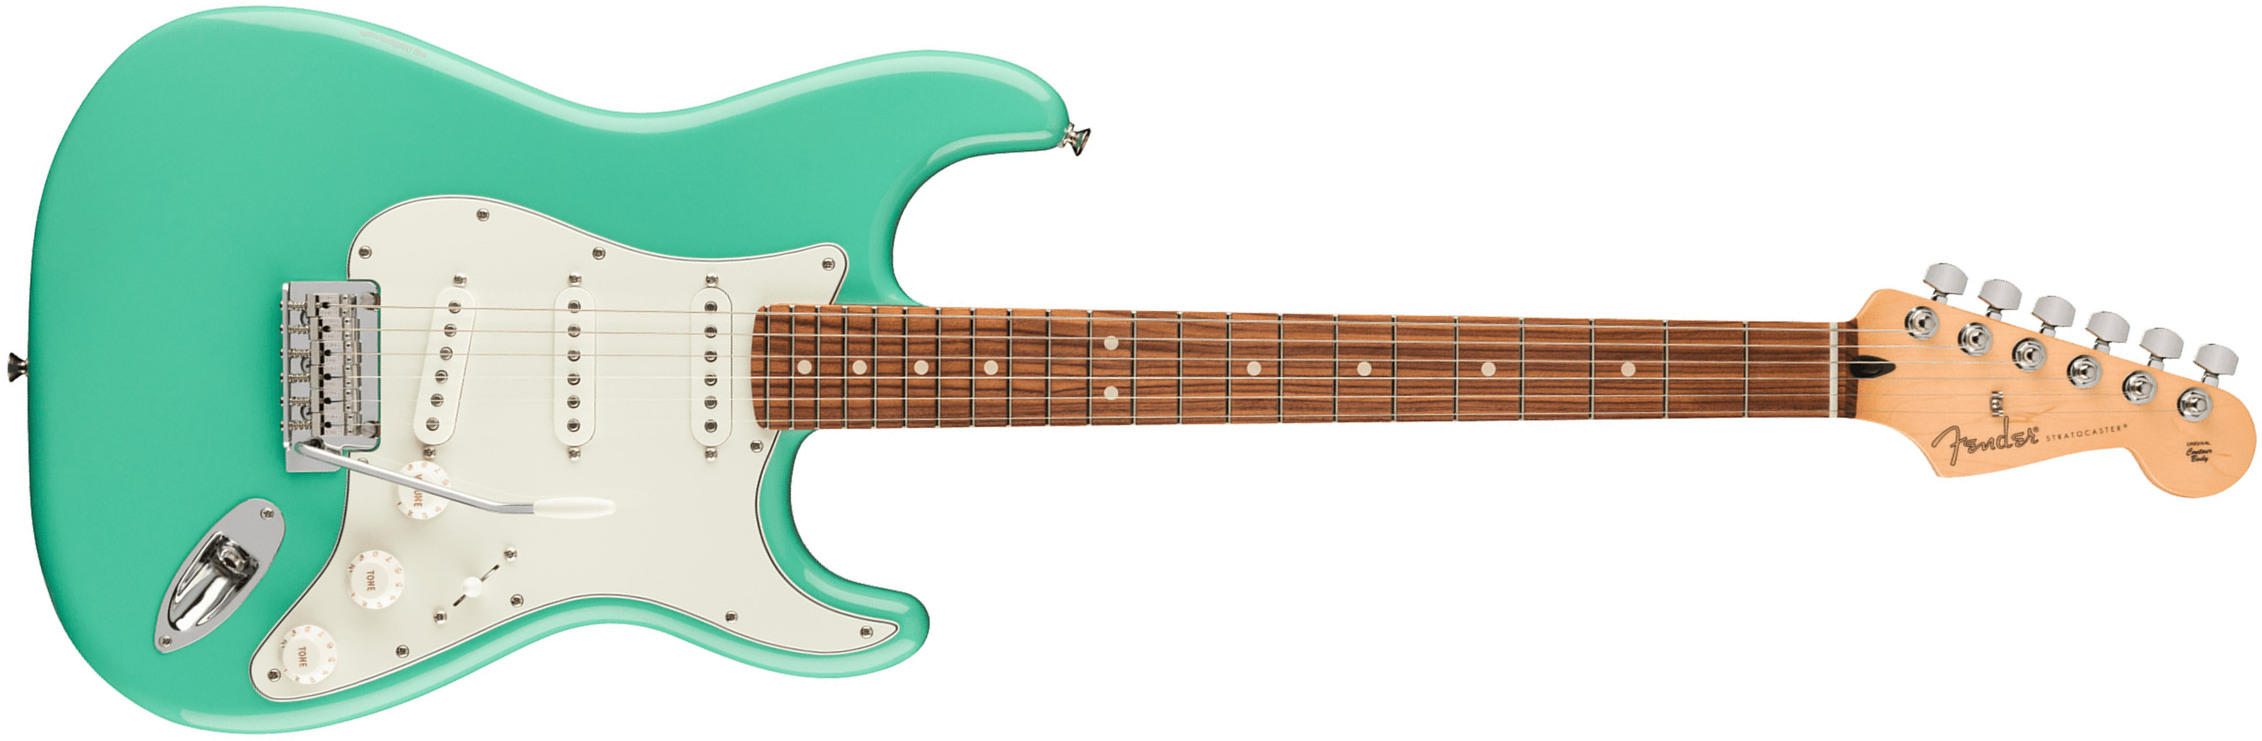 Fender Strat Player Mex 2023 3s Trem Pf - Seafoam Green - Elektrische gitaar in Str-vorm - Main picture